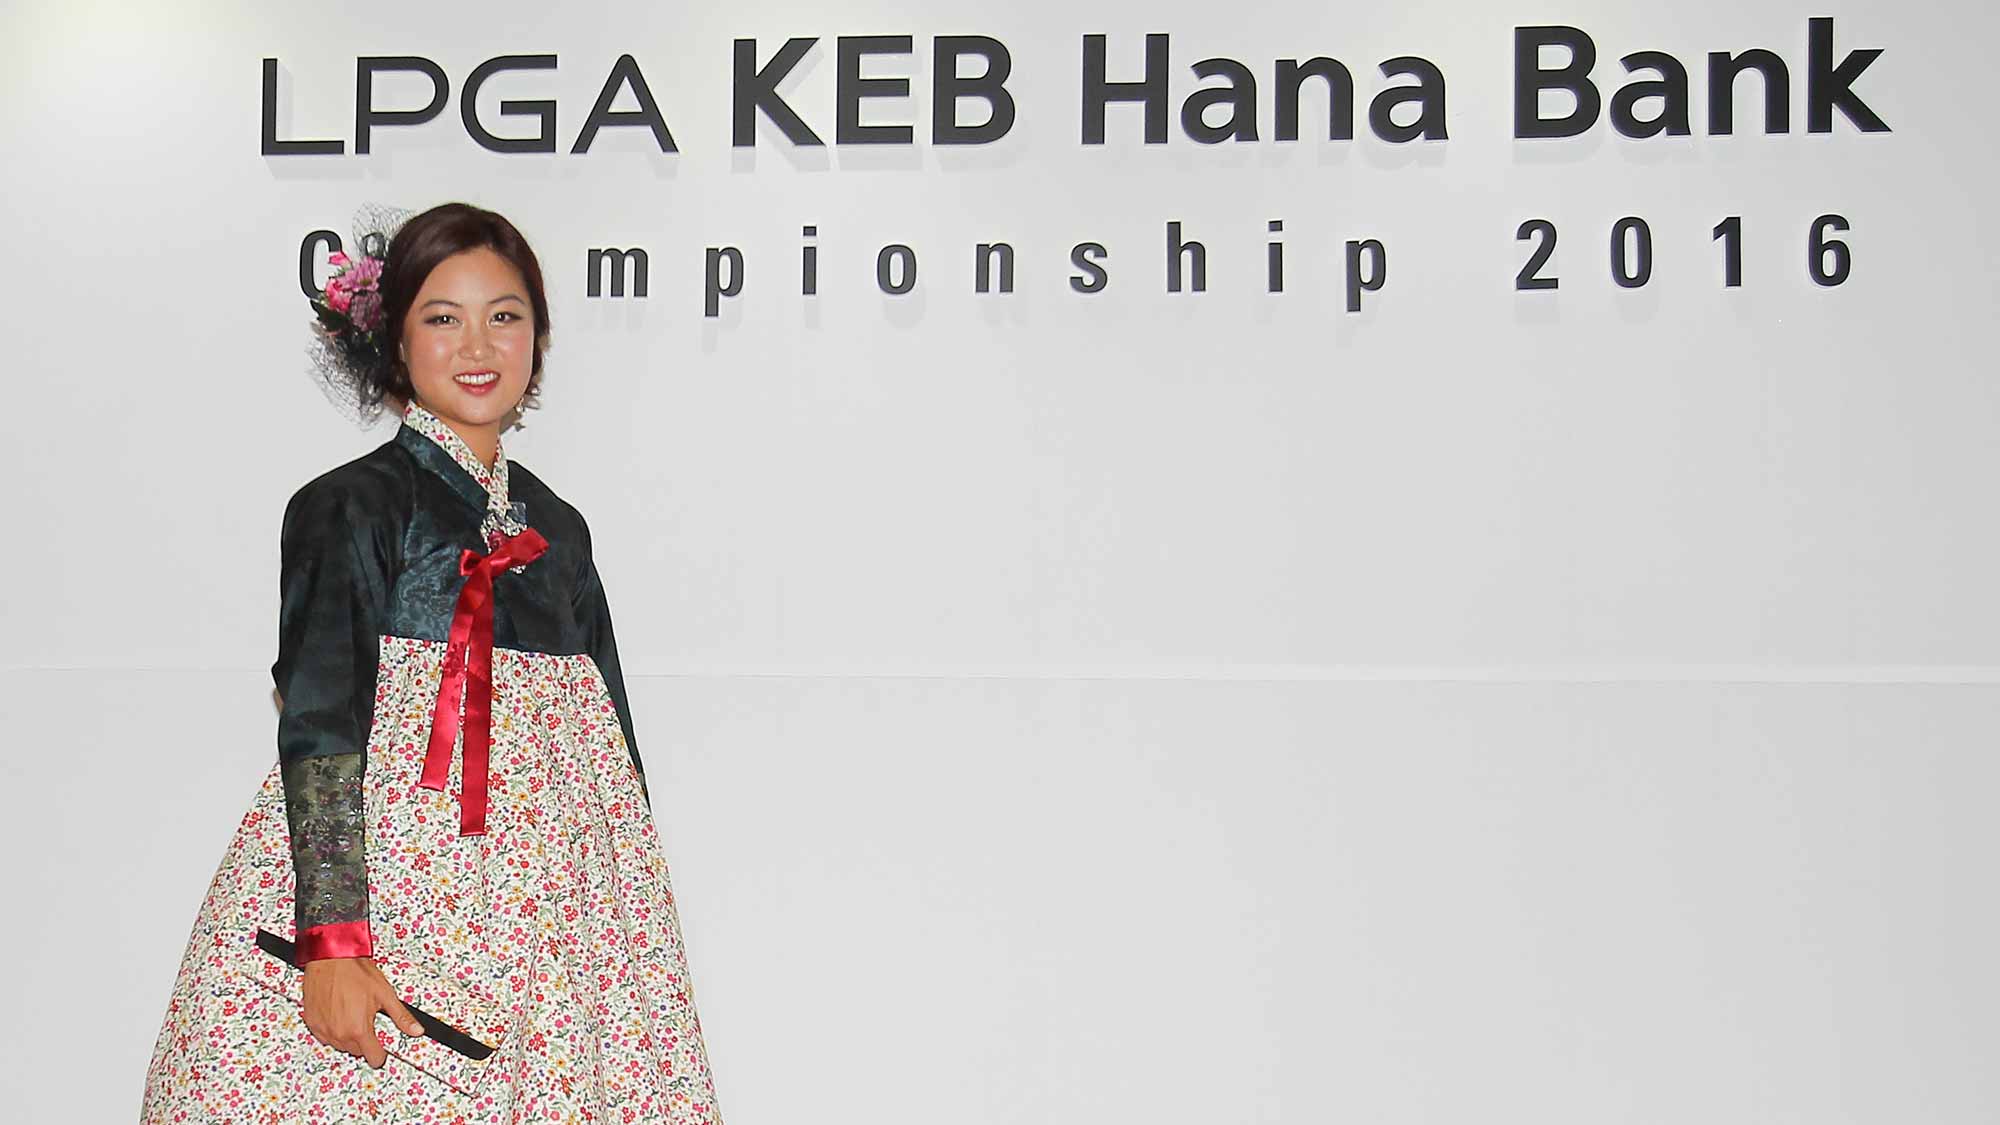 Minjee Lee poses for a photo at the LPGA KEB Hana Bank Pro-Am Party